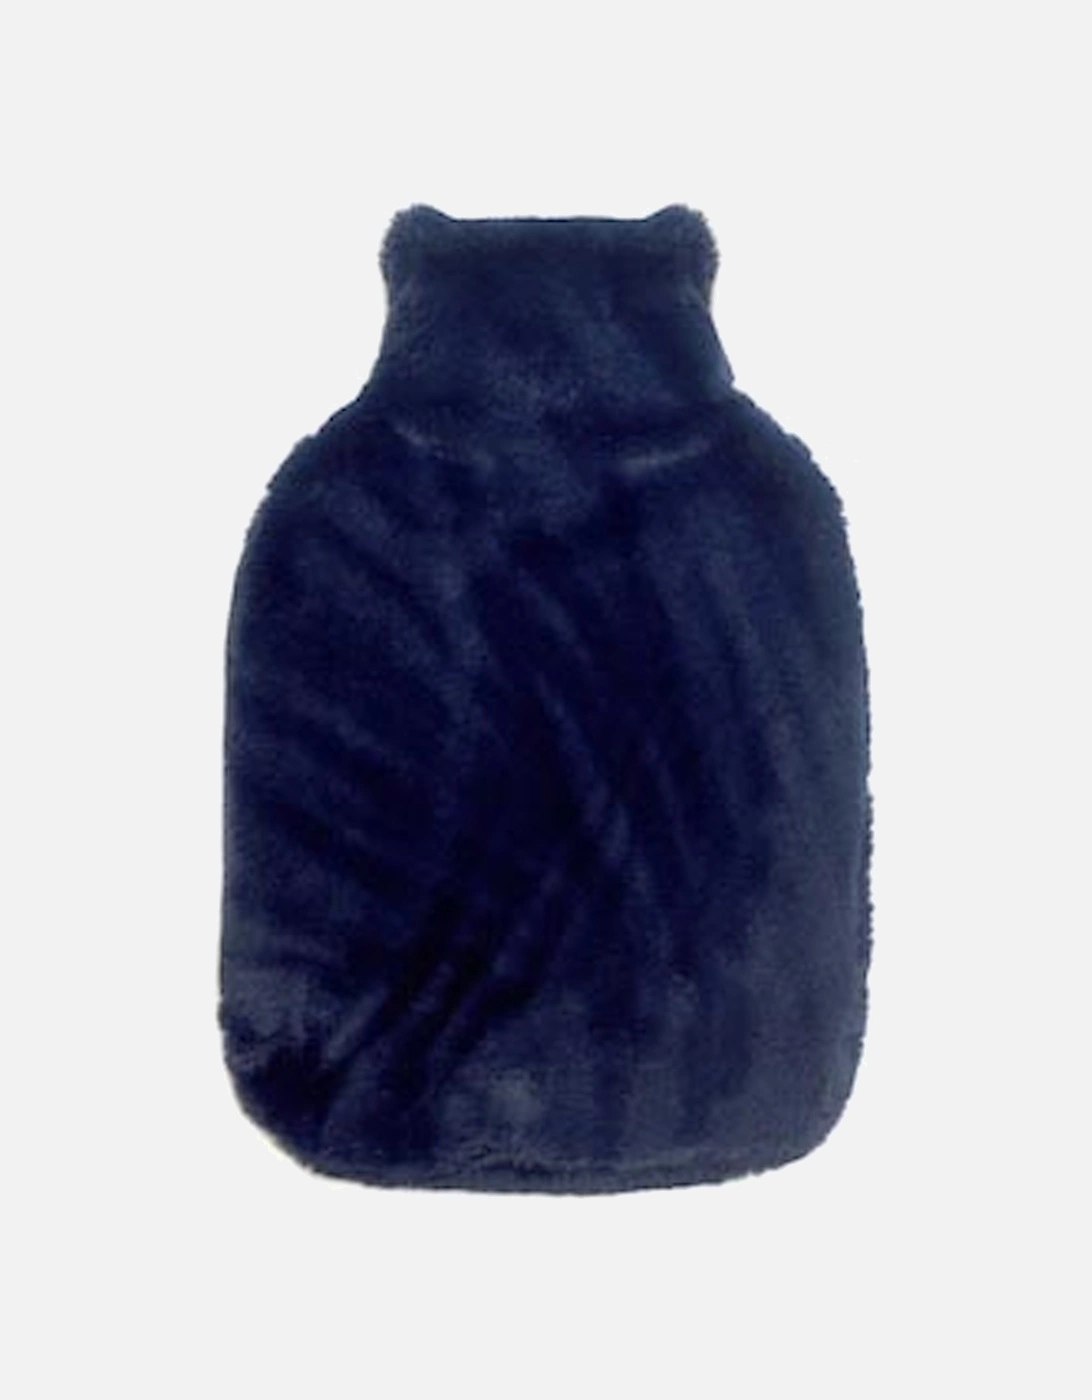 Hot Water Bottle + Faux Fur Cover Blackberry